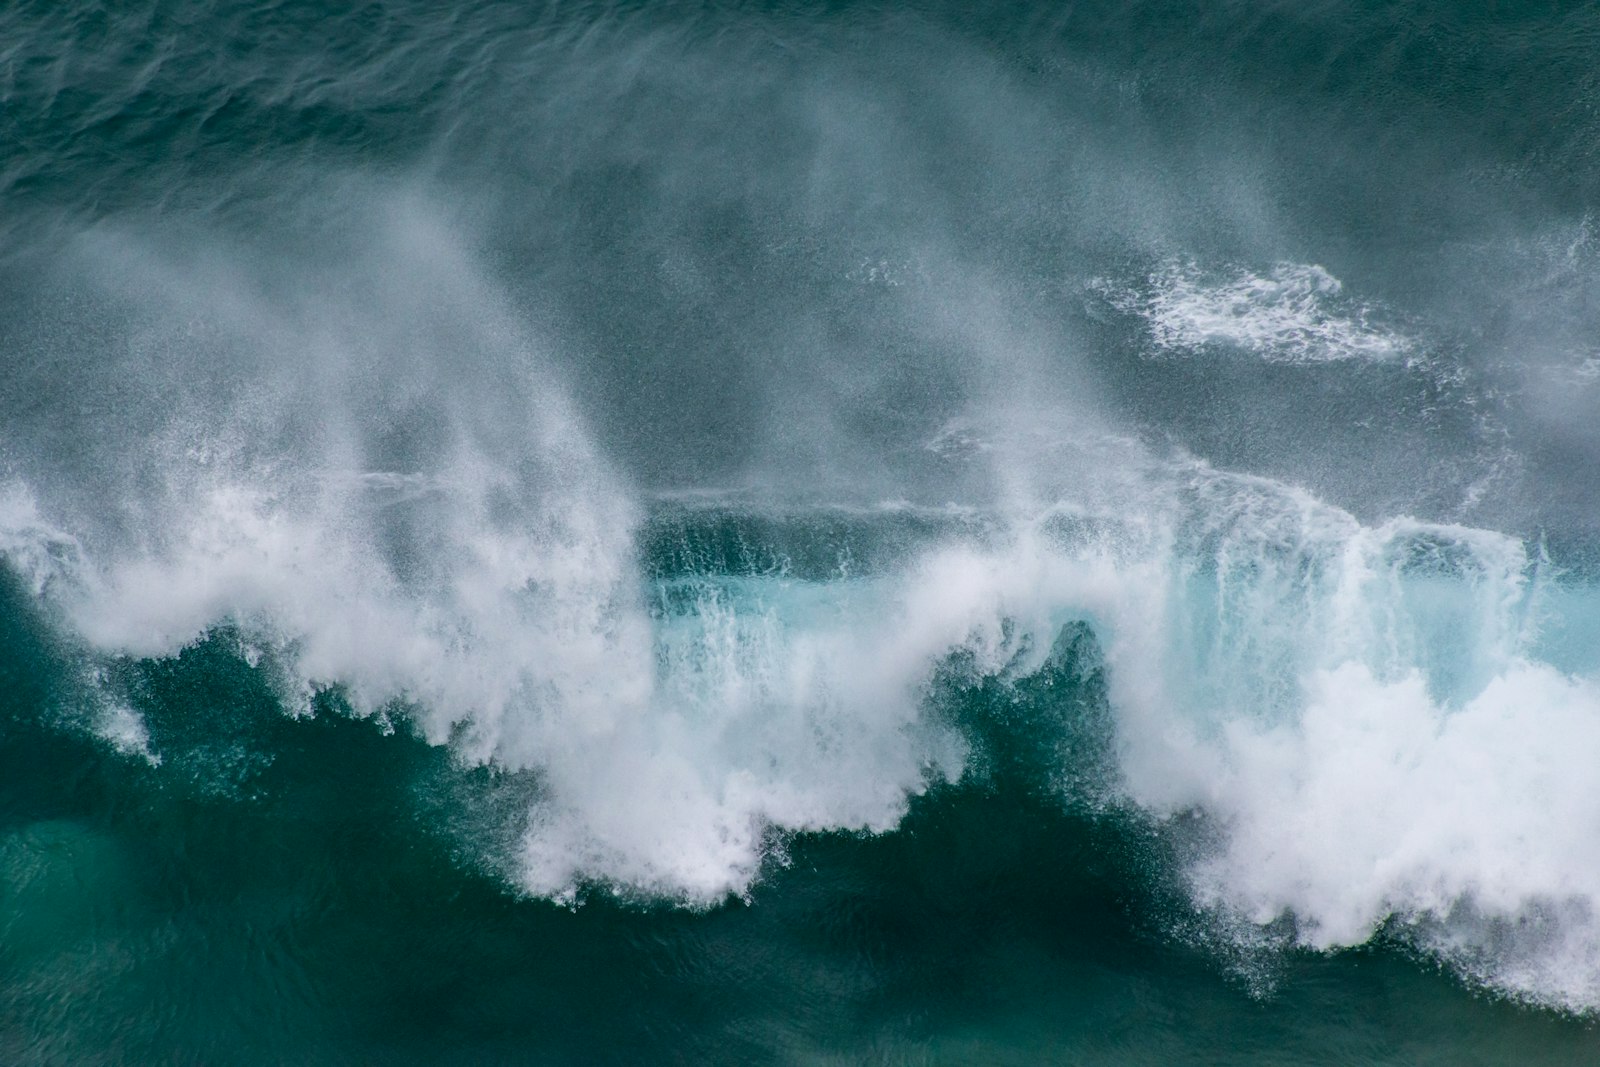 Canon EOS 60D sample photo. Ocean waves crashing on photography